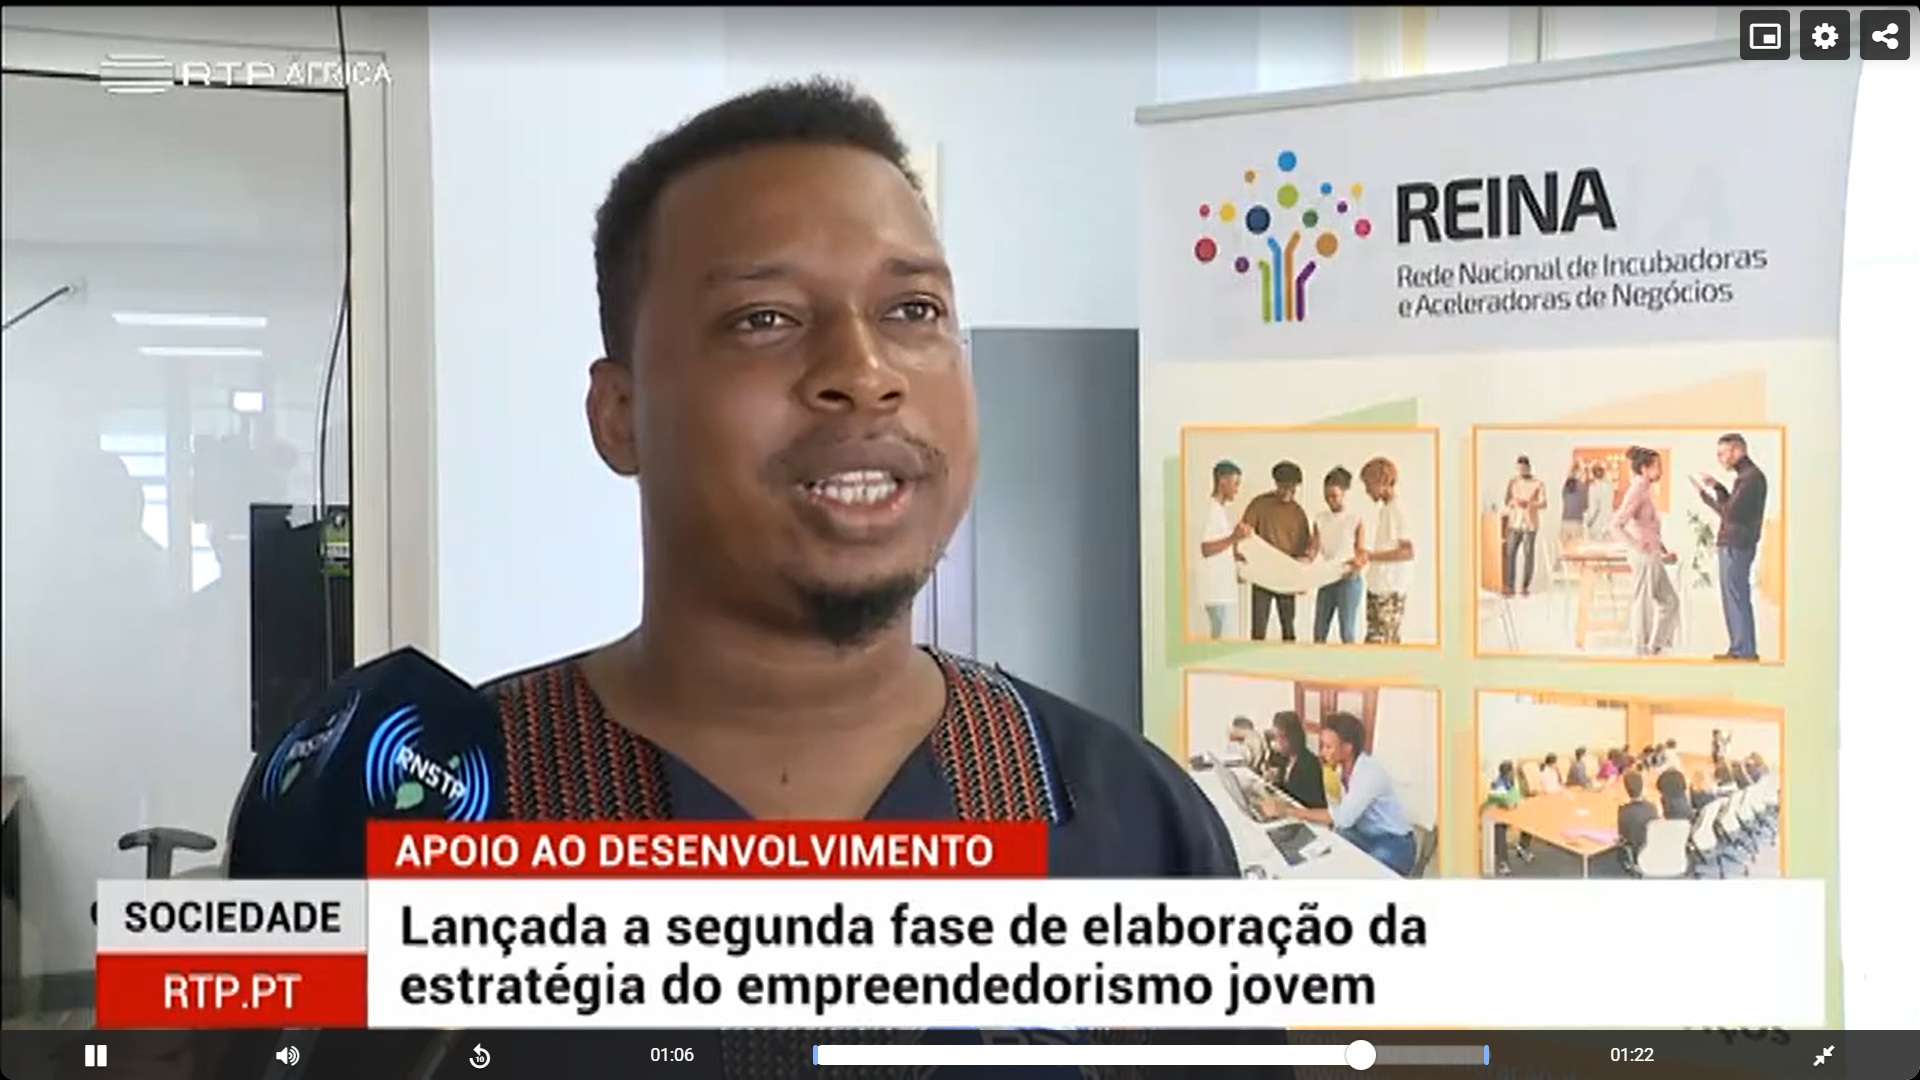 RTP_Africa_Noticias: São Tomé e Príncipe – Lançada segunda fase de elaboração da estratégia do empreendedorismo jovem (SOCIEUX+ 2023-41). RTP.PT